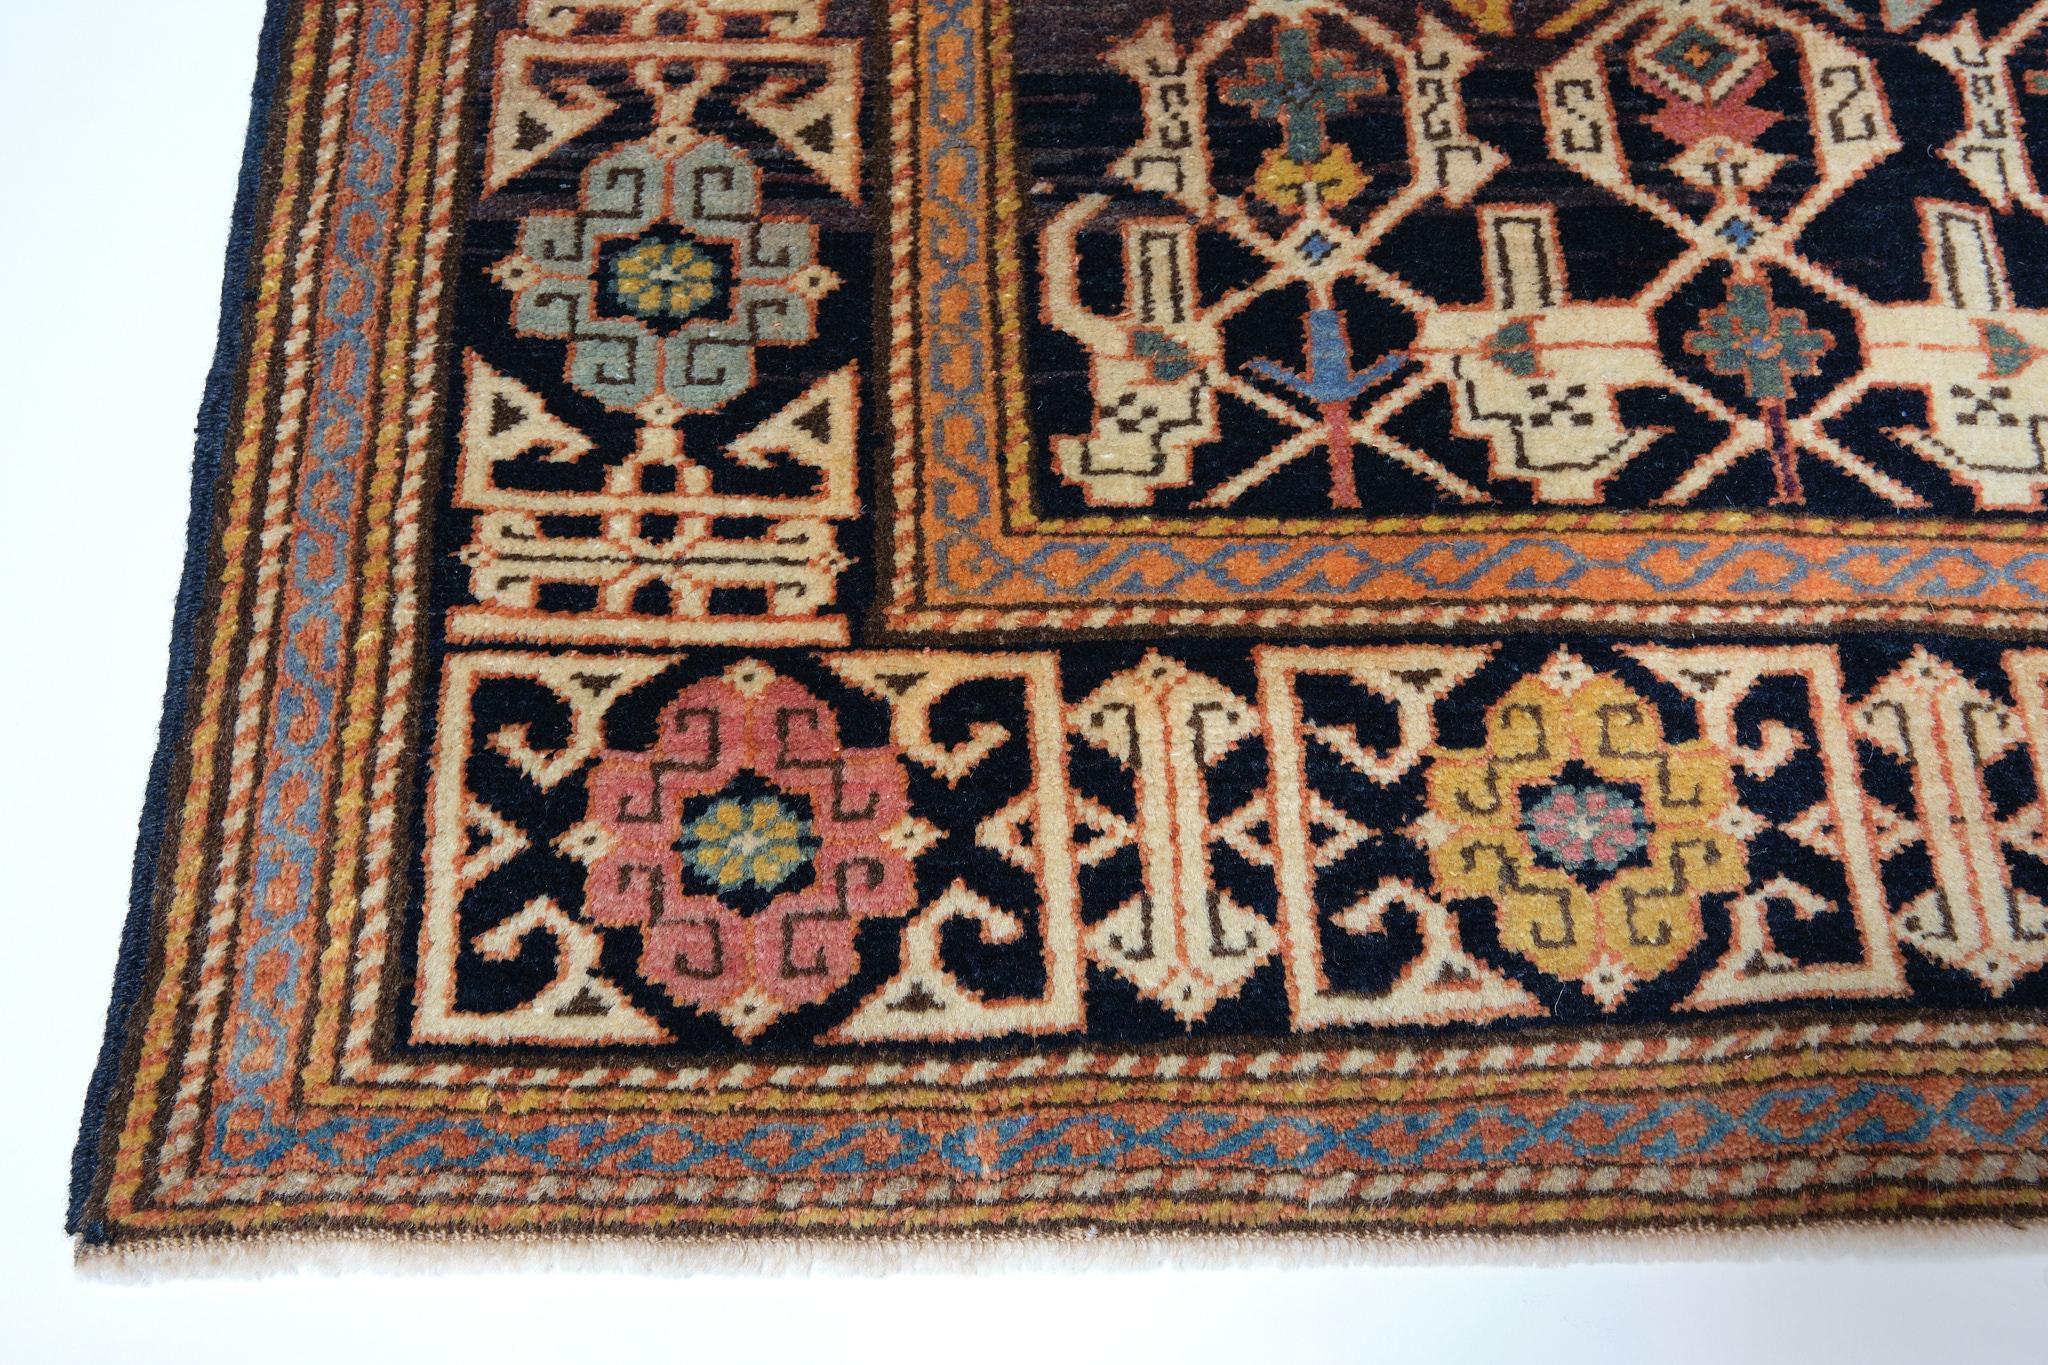 Die Quelle des Teppichs stammt aus dem Buch How to Read - Islamic Carpets, Walter B. Denny, The Metropolitan Museum of Art, New York 2014 Abb.87. Dies ist ein Hausteppich, ein Dorfteppich und eine Nomadenweberei aus dem späten 19. Jahrhundert in der